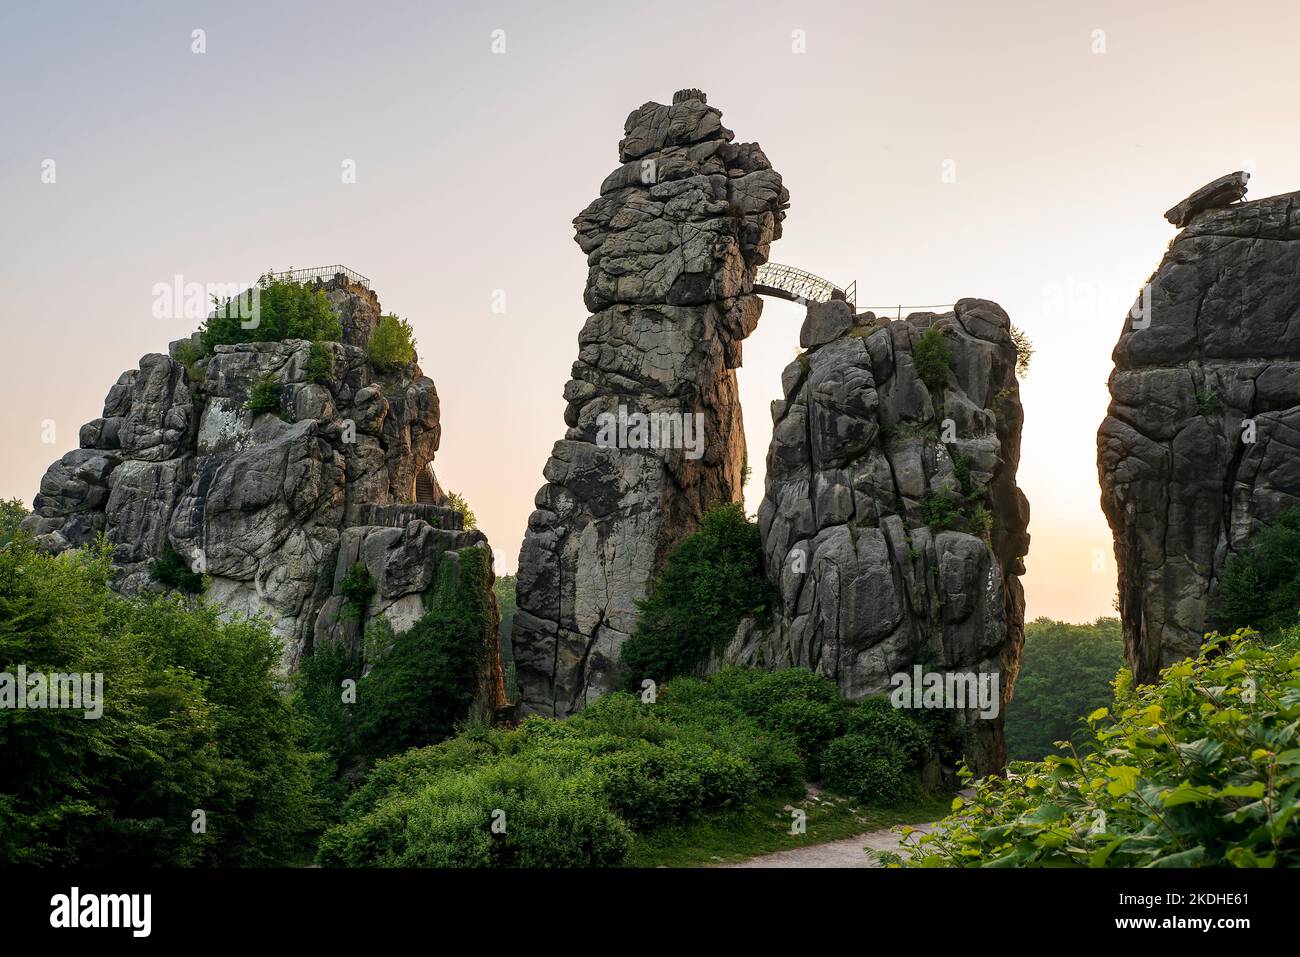 L'iconica formazione rocciosa di Externsteine contro il cielo del mattino presto, la Foresta di Teutoburg, Germania Foto Stock